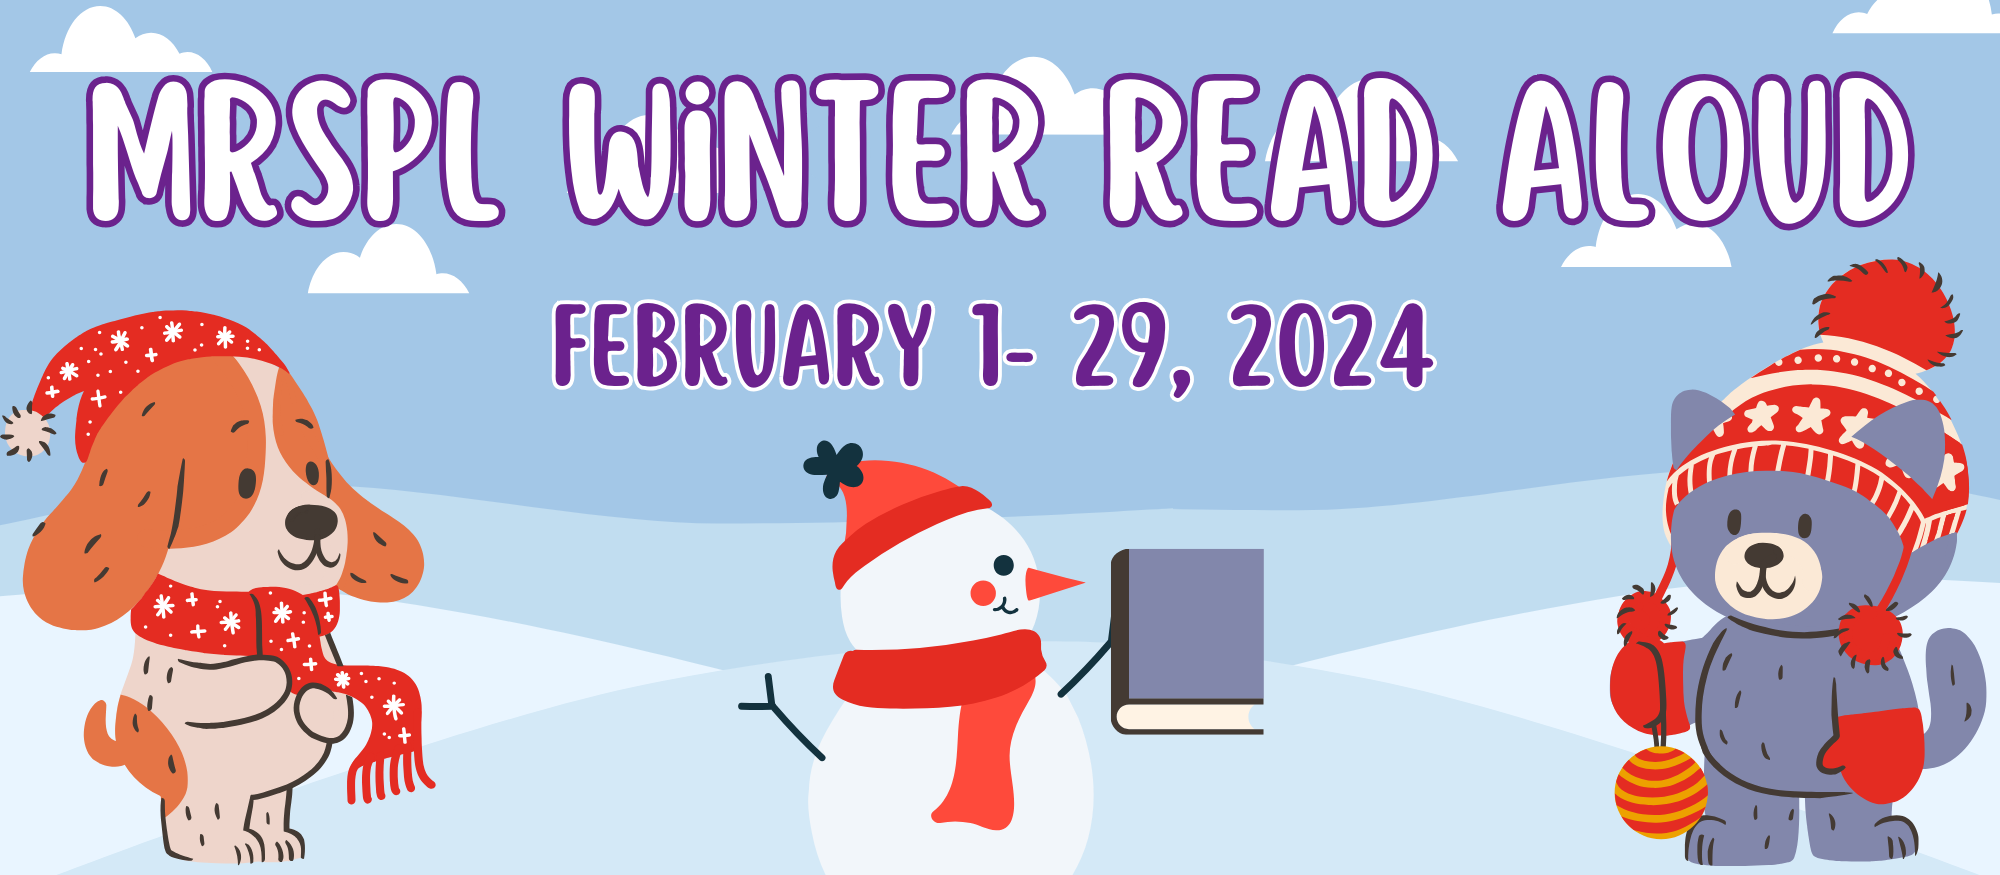 mrspl winter read aloud banner feb 1-29, 2024